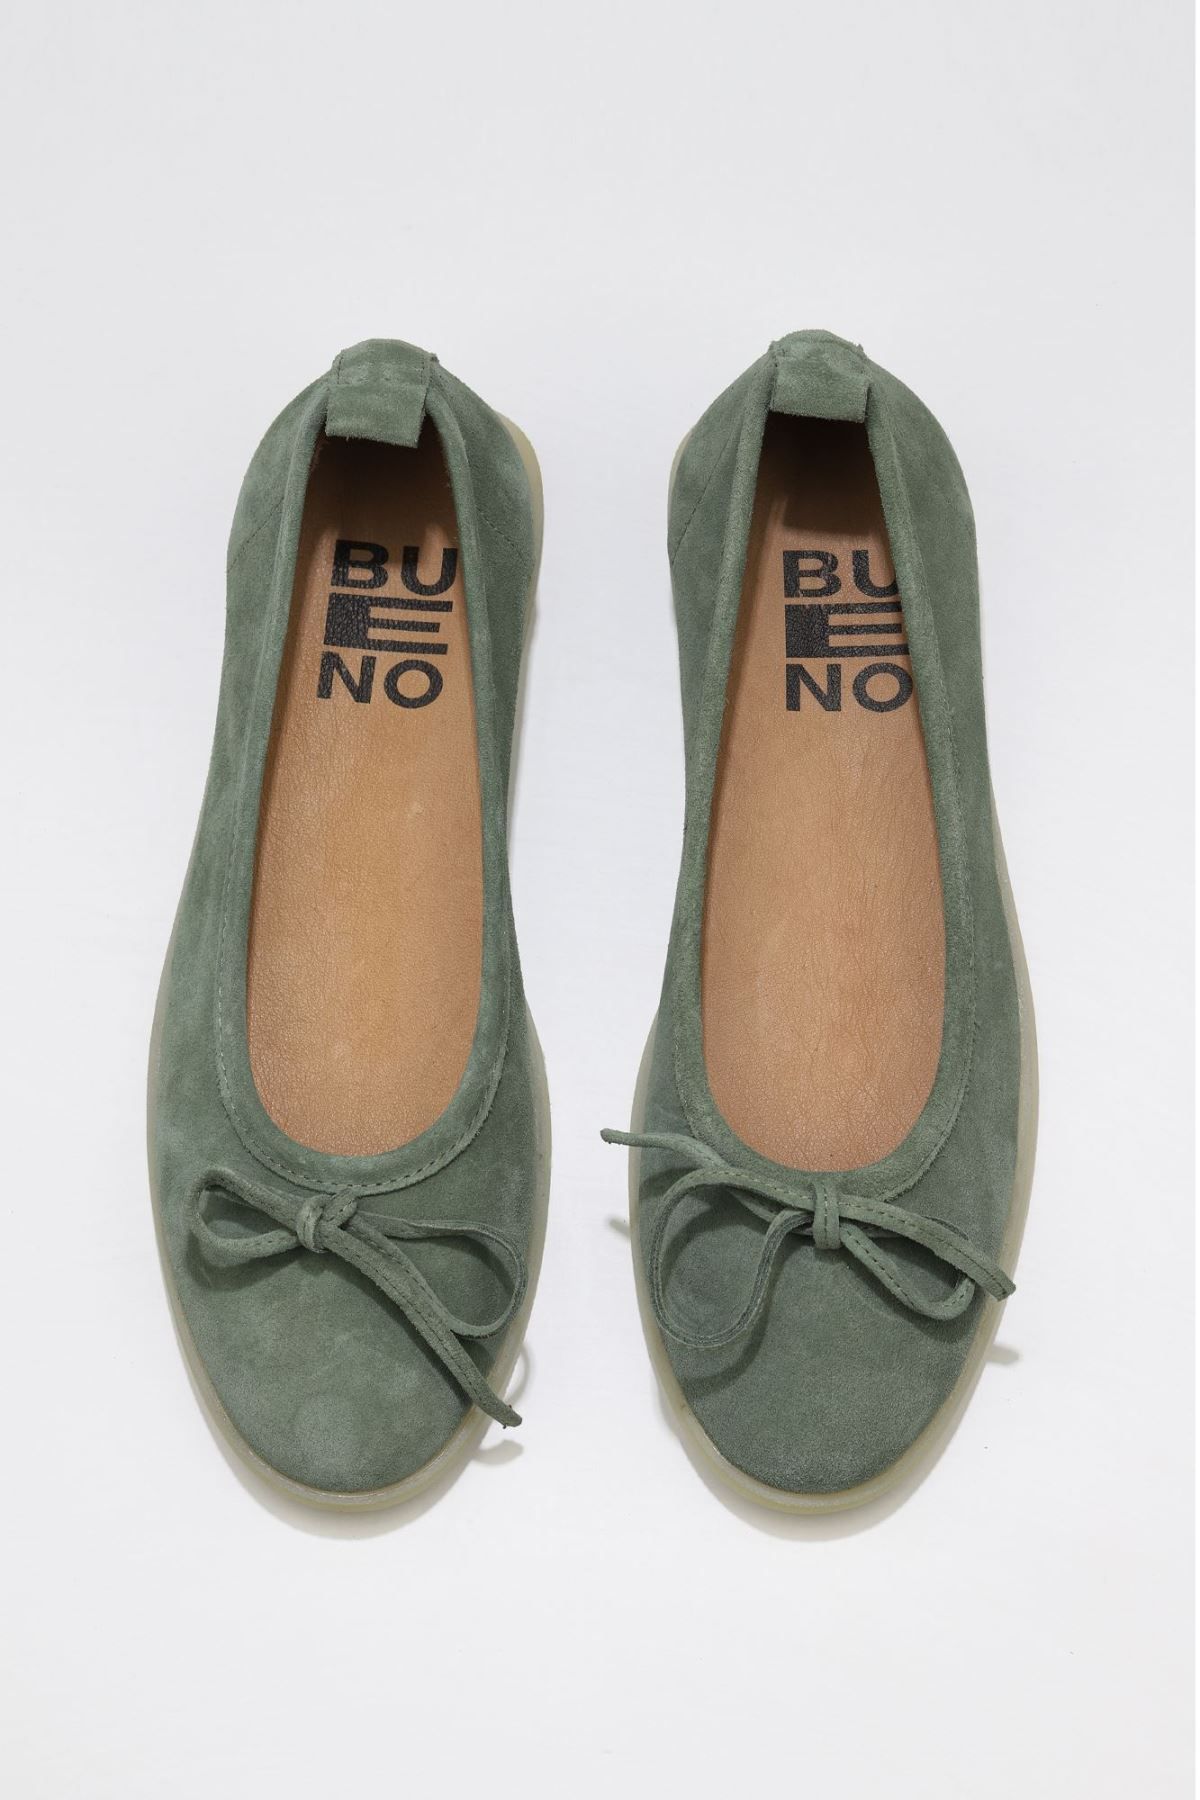 Bueno Shoes Haki Süet Kadın Az Topuklu Ayakkabı